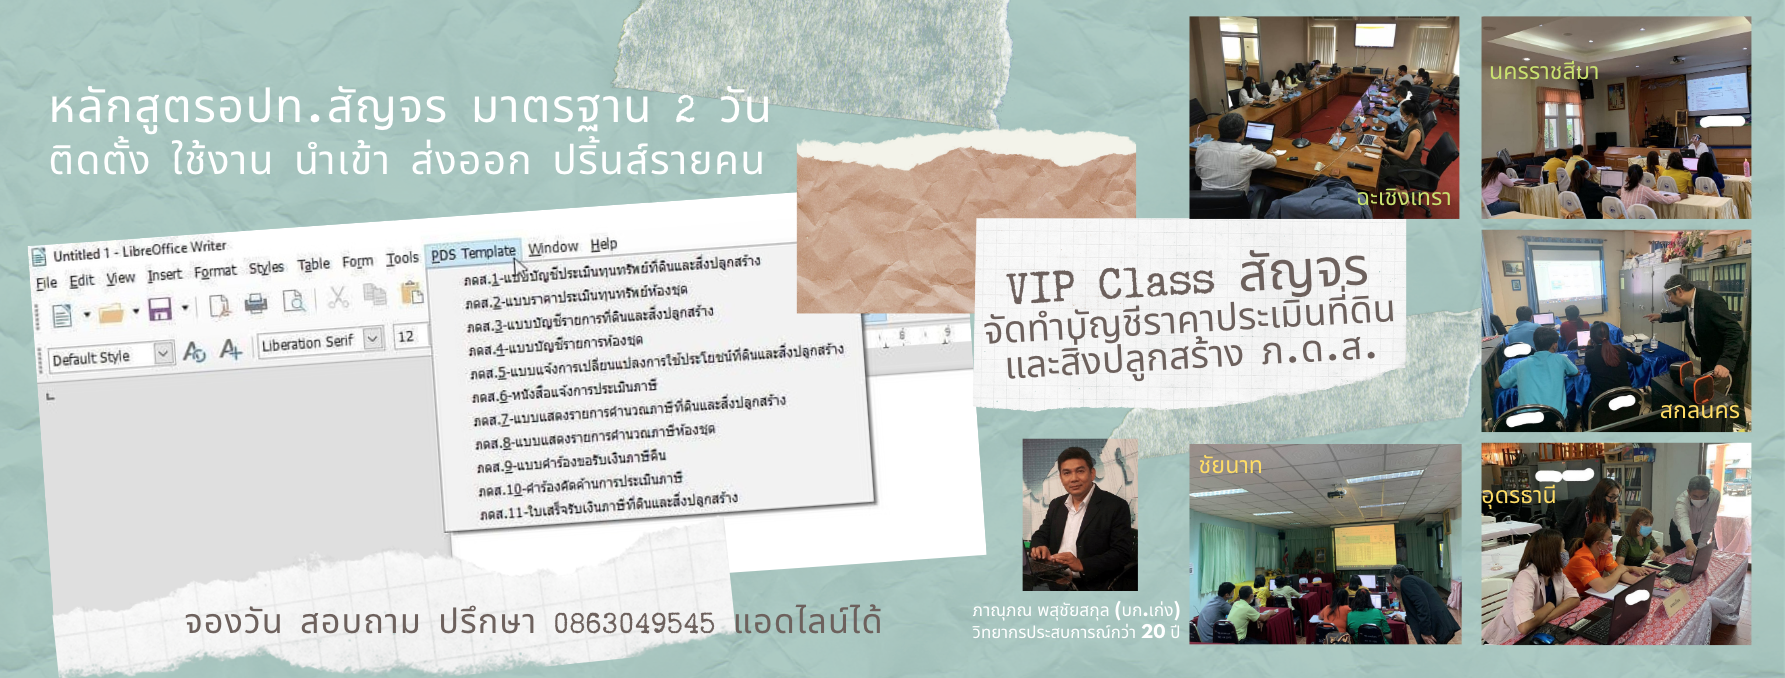 อบรม VIP Class “การจัดทำบัญชีราคาประเมินที่ดินและสิ่งปลูกสร้าง เพื่อออกรายงาน ภ.ด.ส." สอนตรงที่ อปท. 0863049545 แอดไลน์ได้